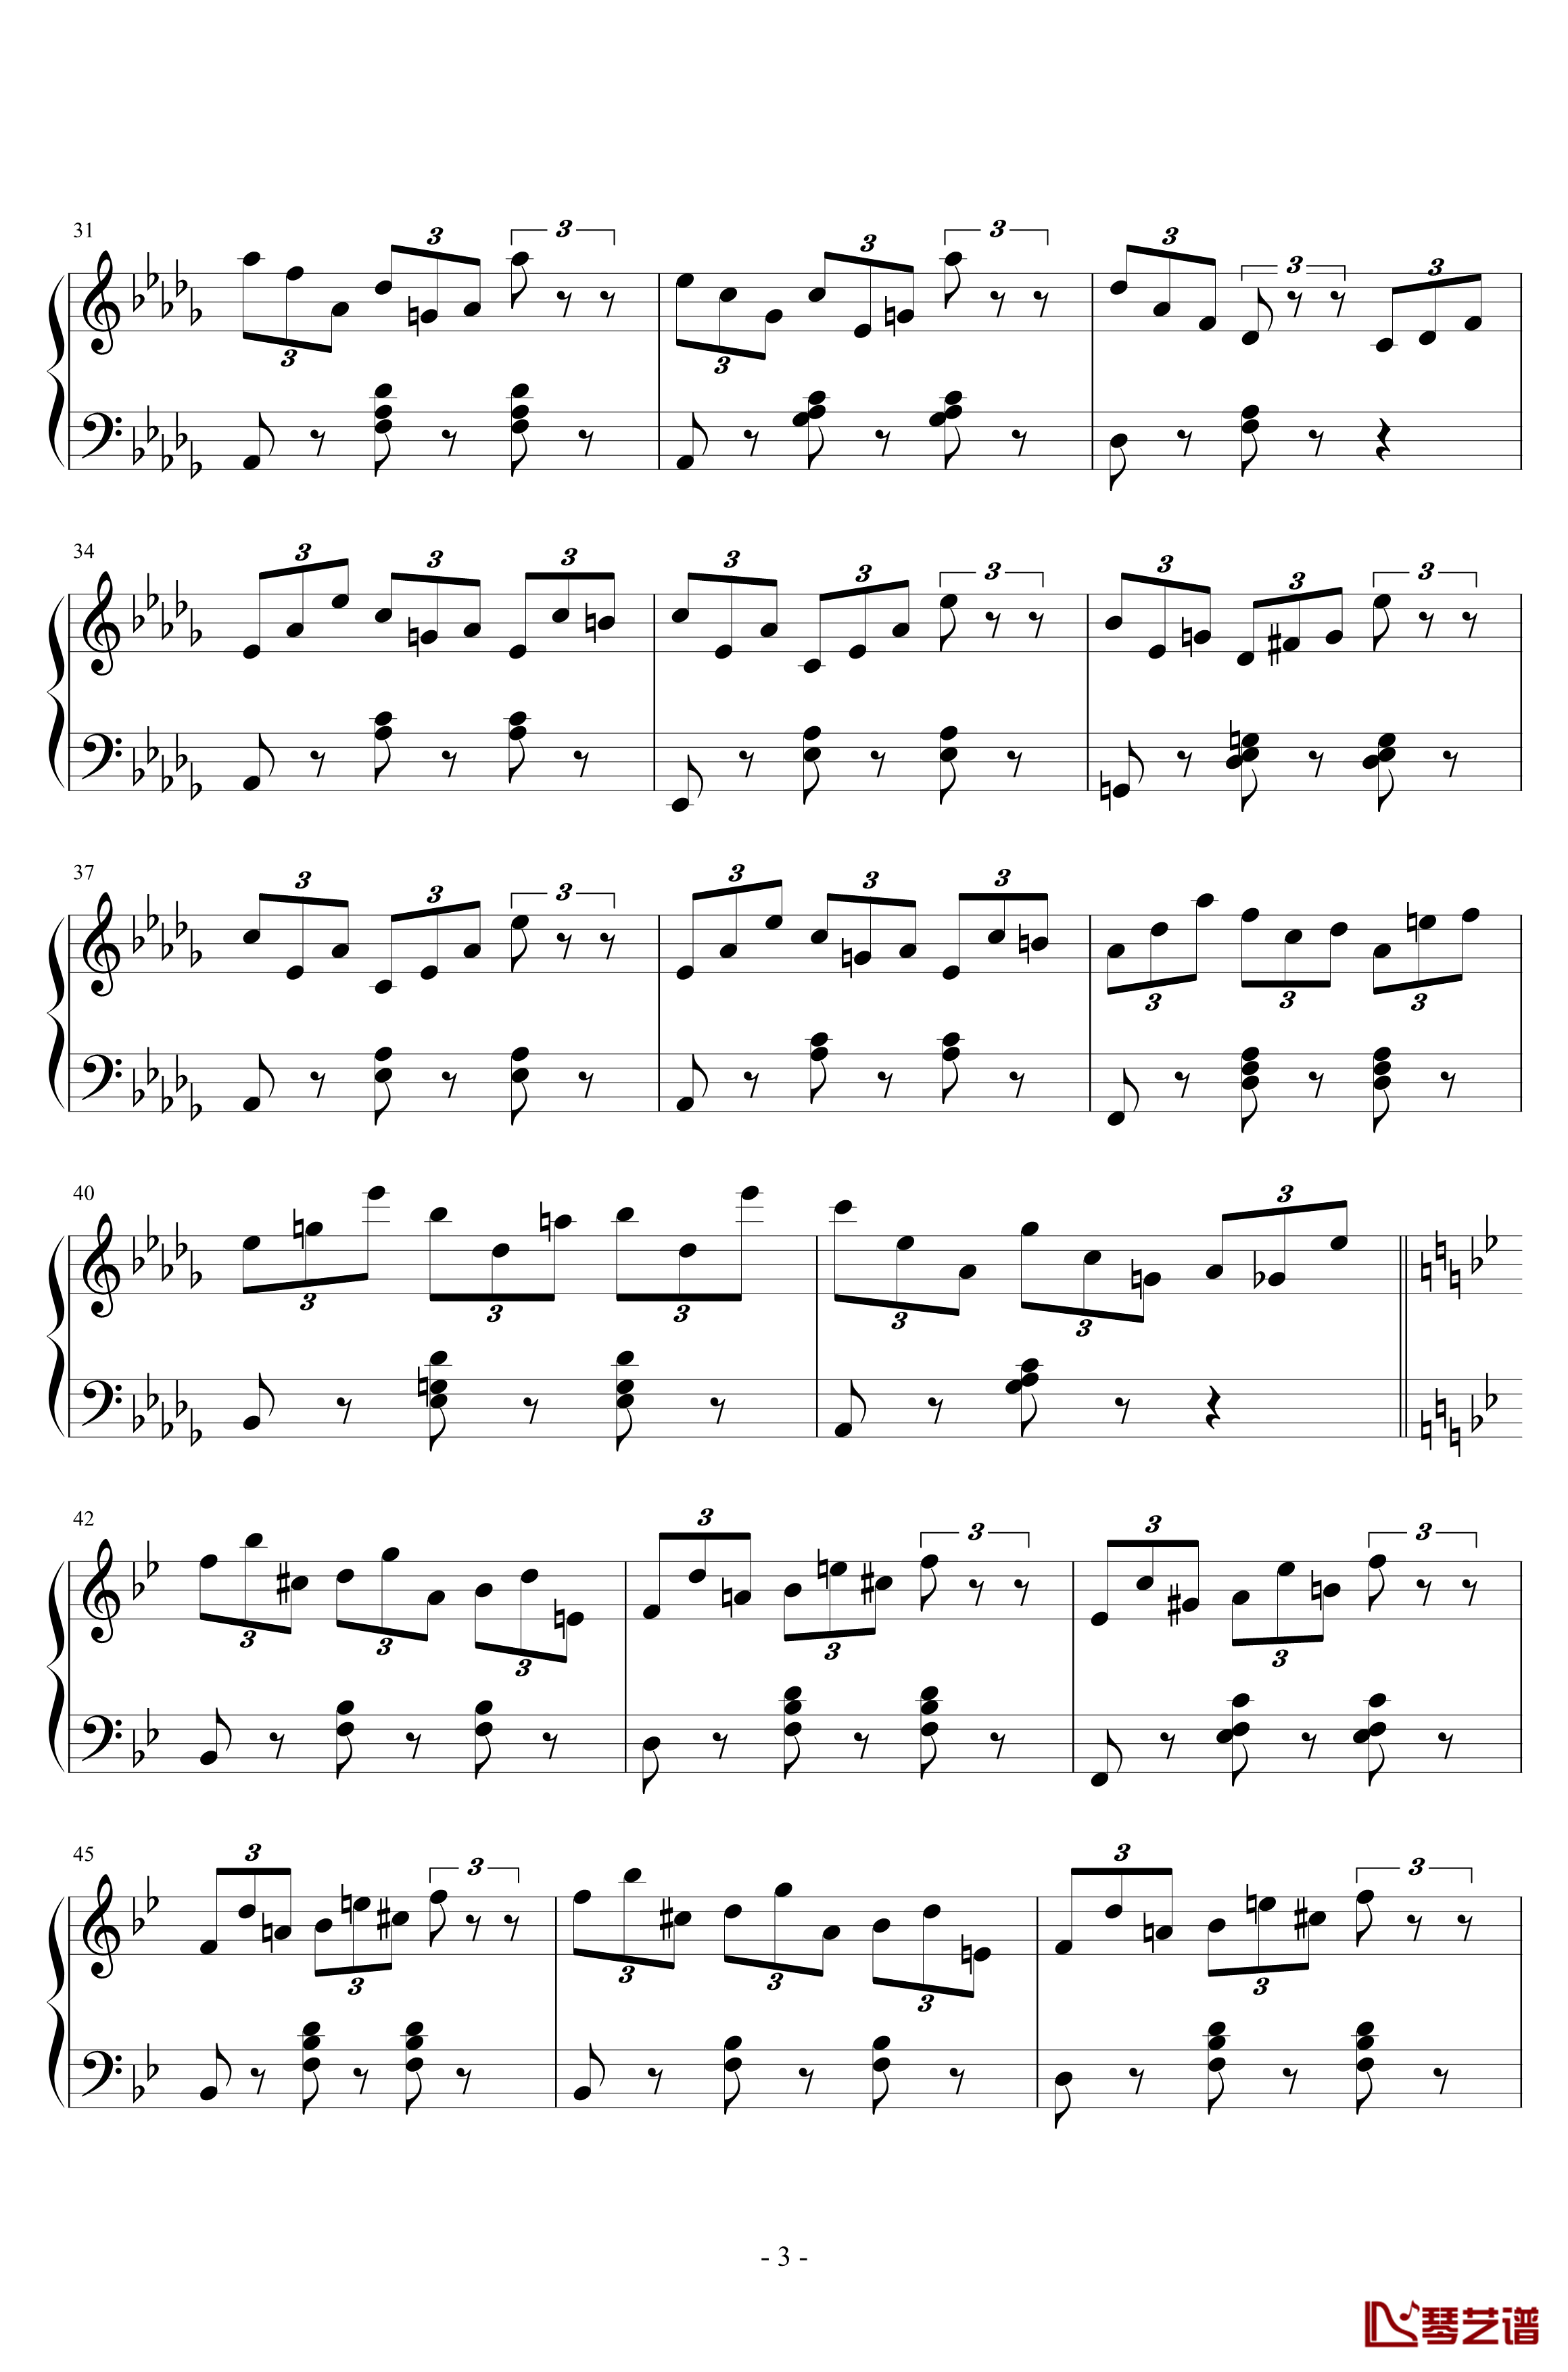 练习曲No.1 Op.6 降D大调练习曲钢琴谱-江畔新绿3